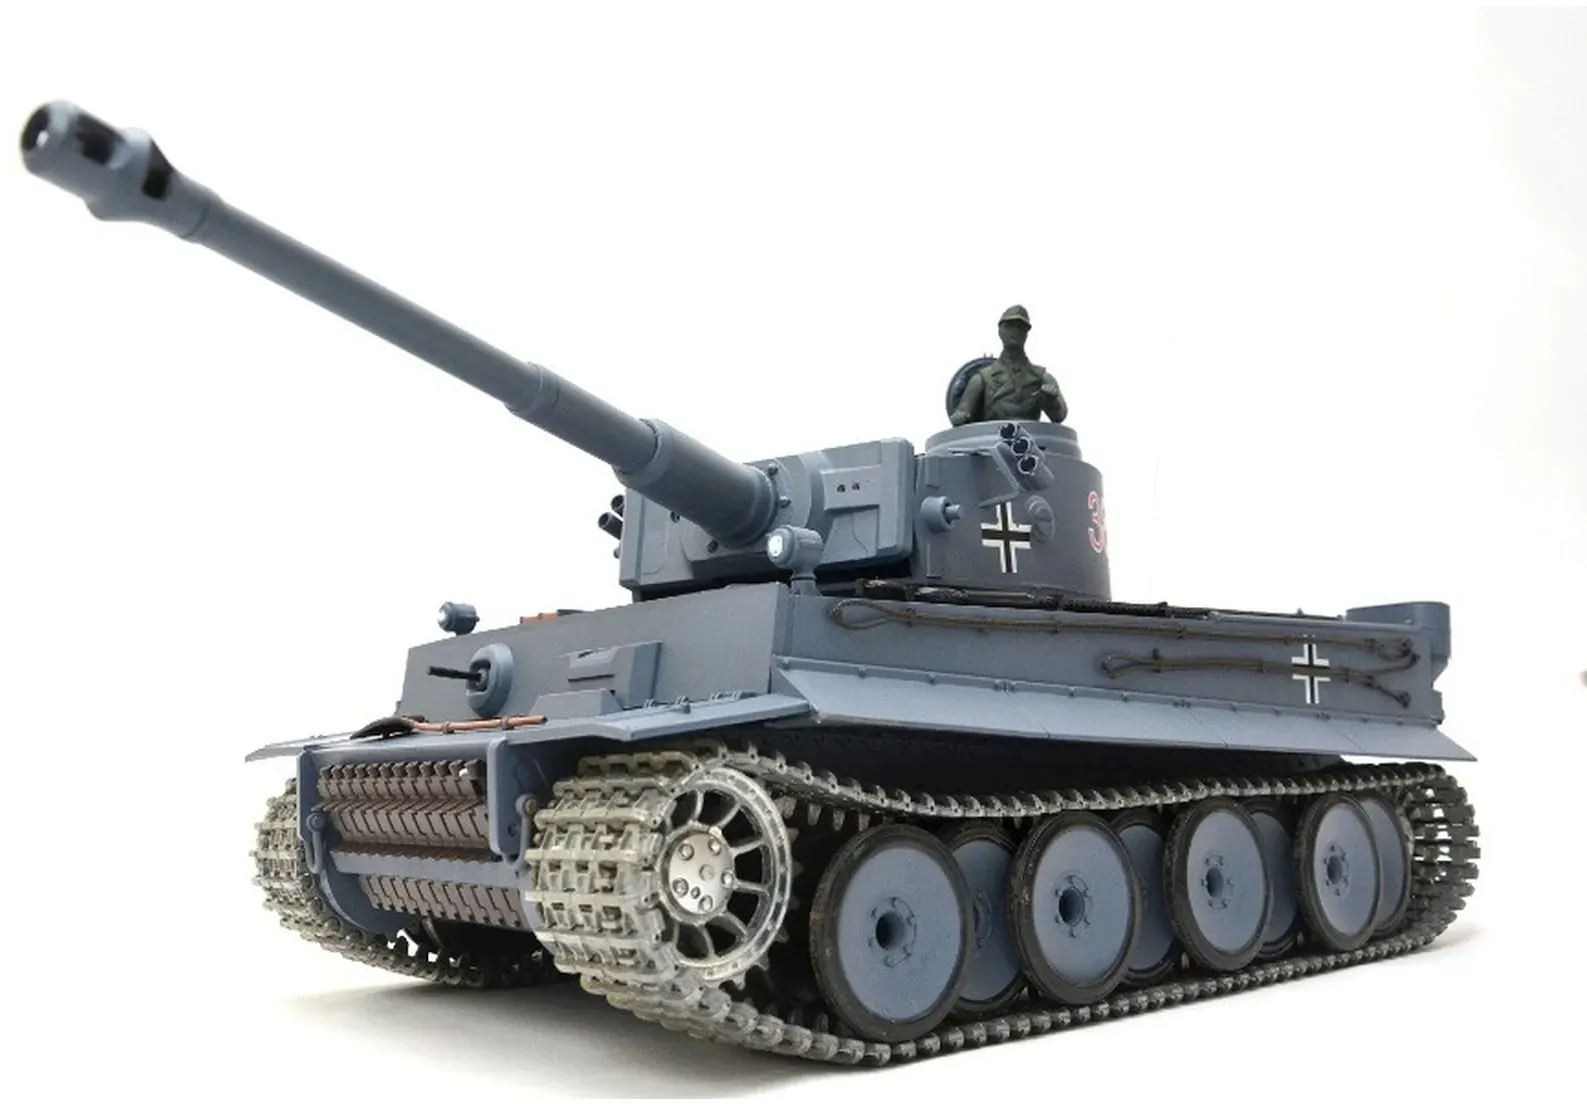 TPFLiving RC-Panzer German Tiger I UPG-A V7.0 Upgrade-A V7.0 - RC Panzer ferngesteuert - Panzer mit Schussfunktion, Stahlgetriebe und Kettenantrieb - Rauch und Sound - Maßstab 1:16